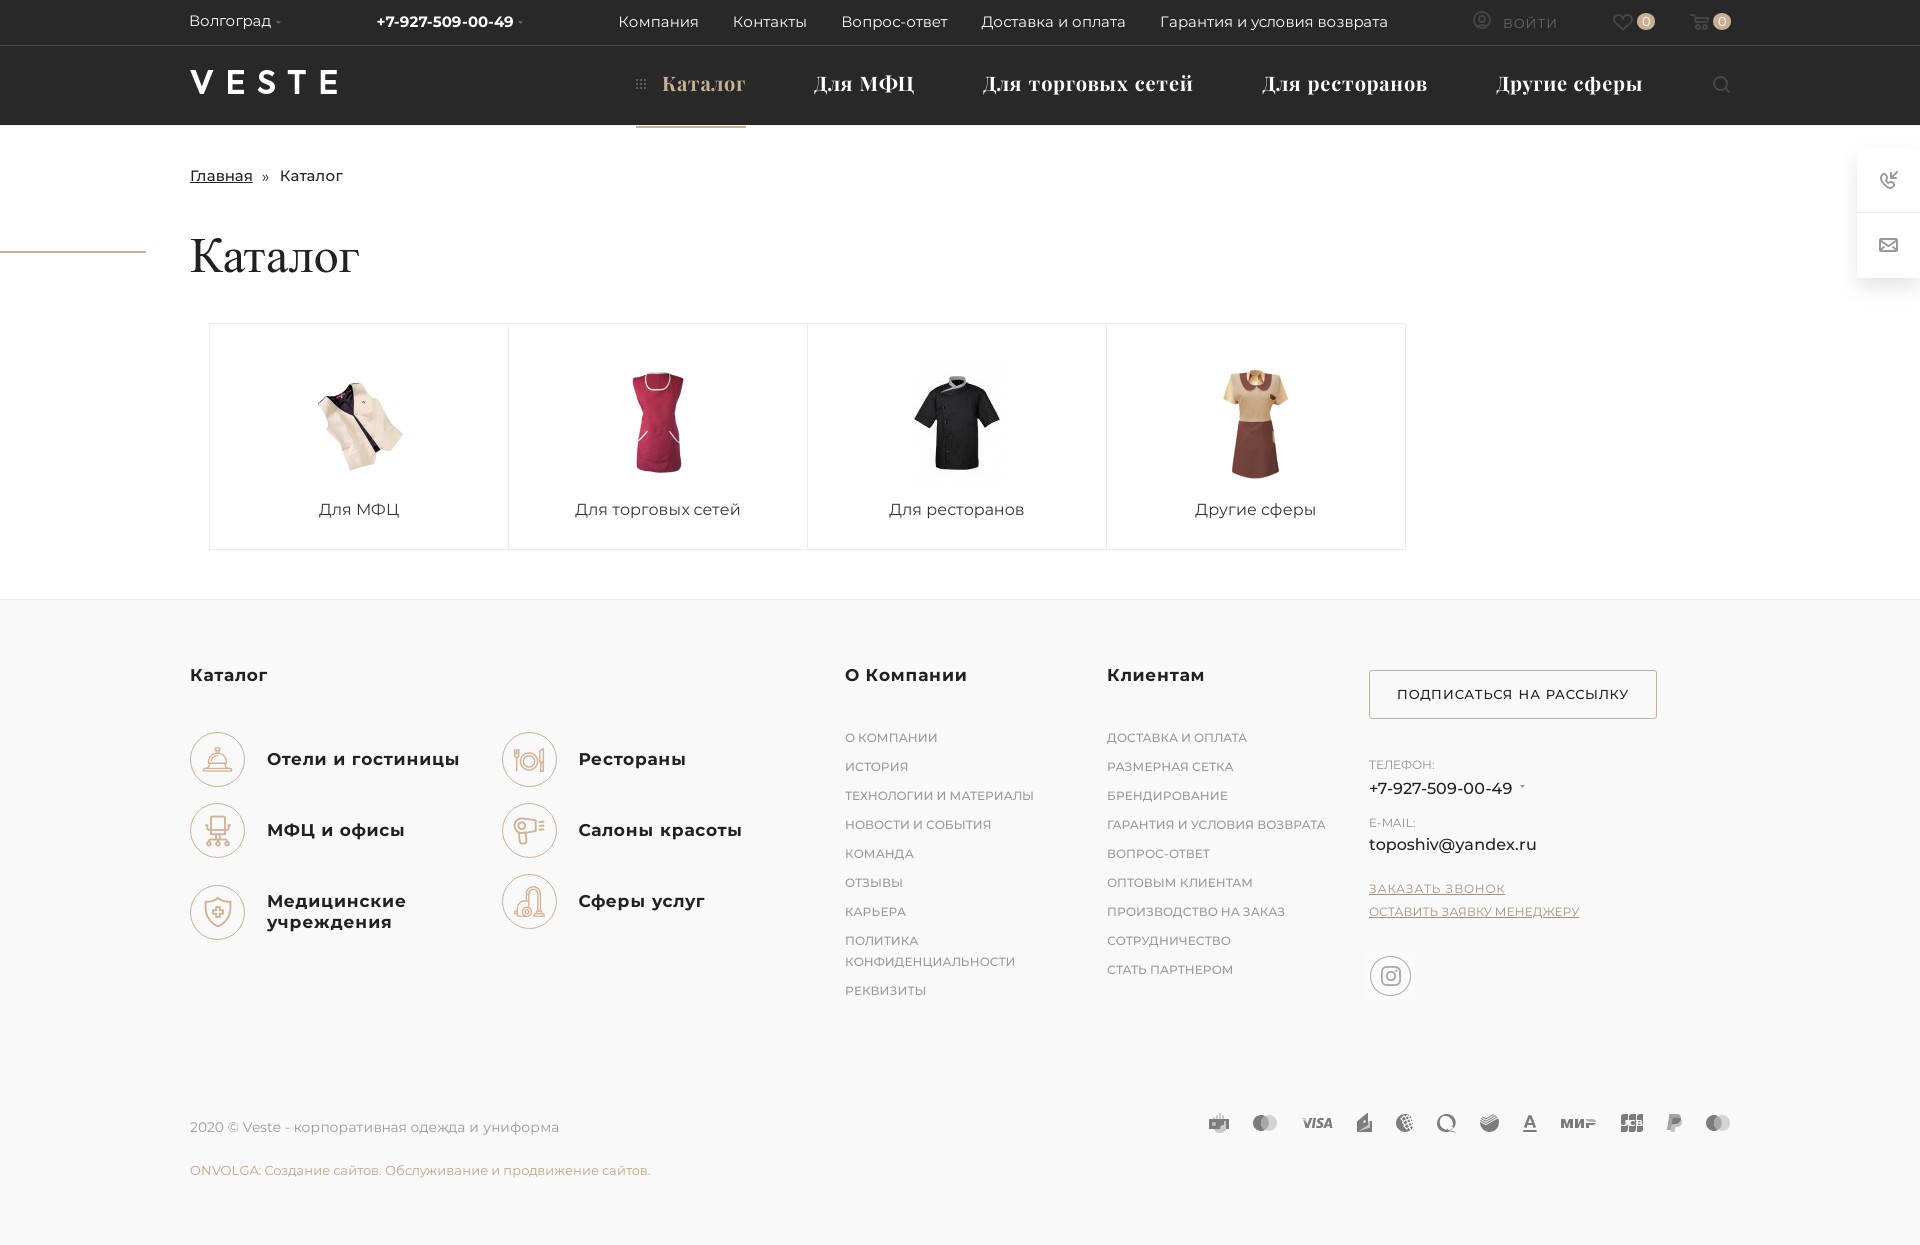 интернет-магазин корпоративной одежды и униформы veste